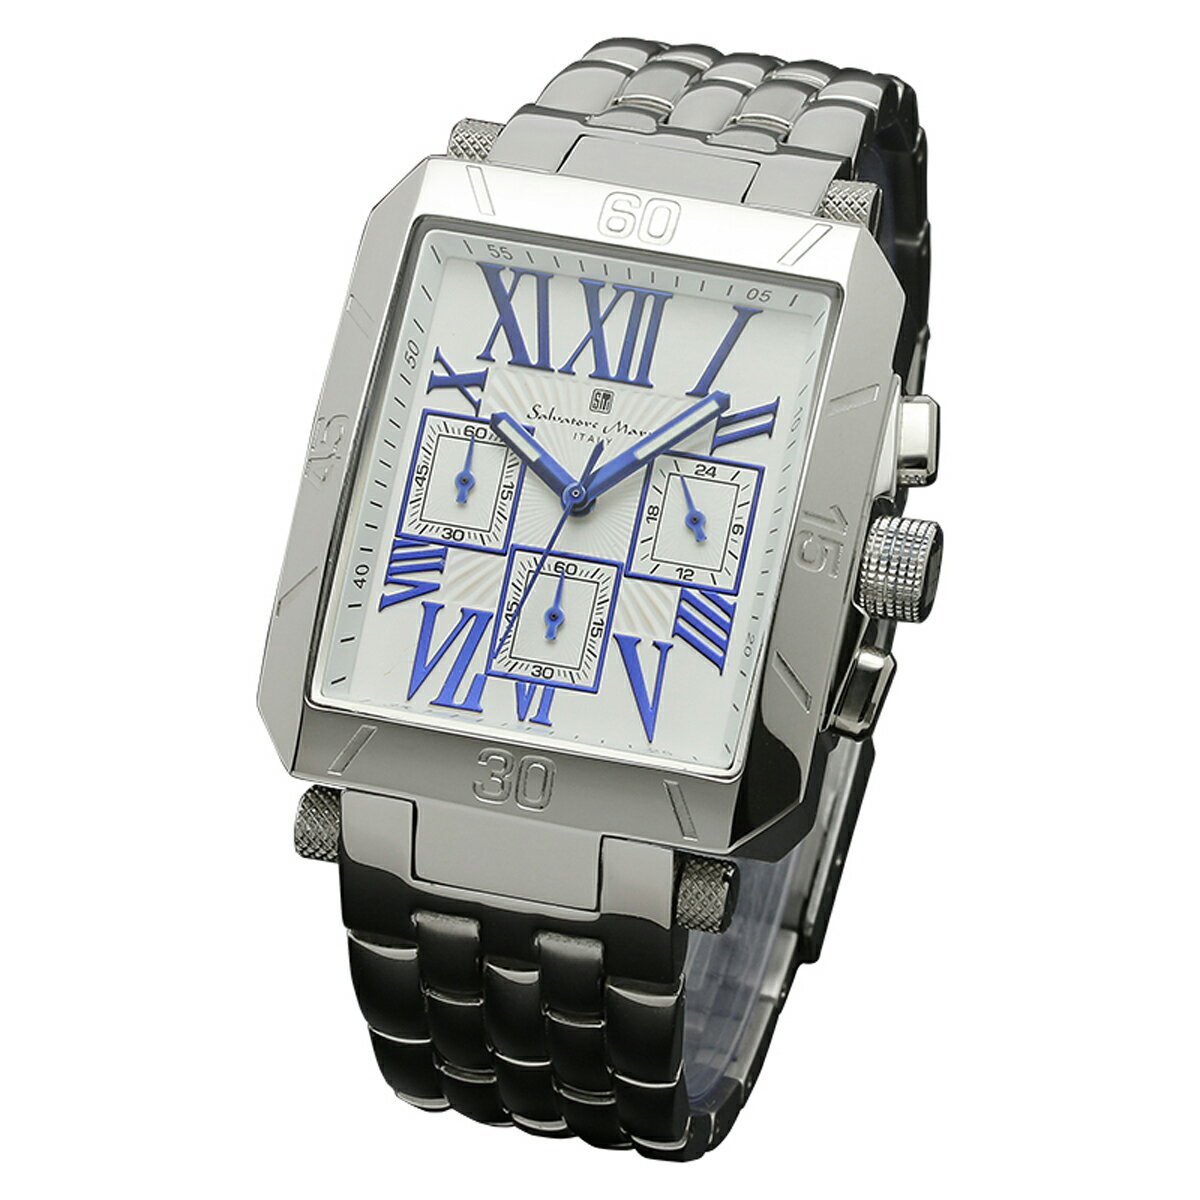 サルバトーレマーラ Salavatore Marra 腕時計 SM17117-SSWHBL クオーツ クロノグラフ メンズ腕時計 ステンレスベルト ローマ数字 アナログ表示 日常生活防水 紳士用 時計